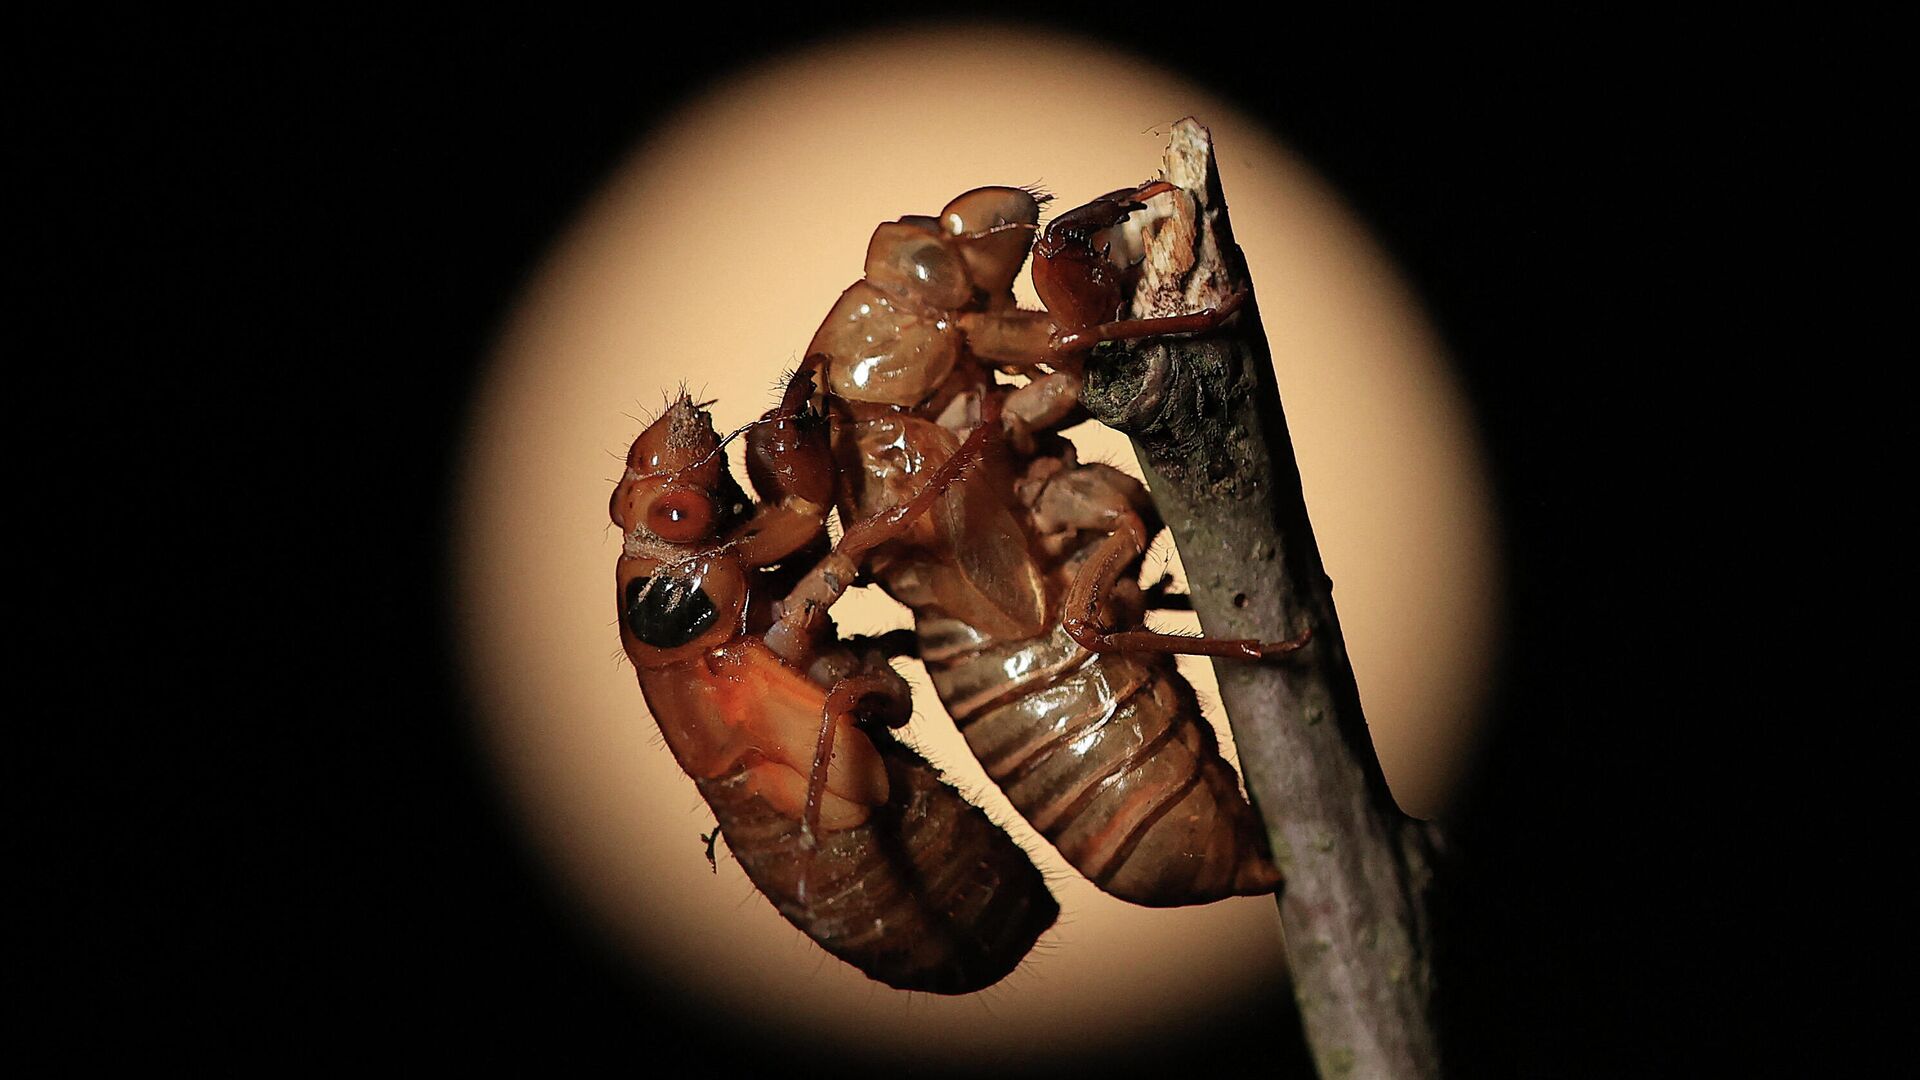 Периодическая цикада покидает свою оболочку нимфы на этапе превращения во взрослую цикаду в Такома-парке, штат Мэриленд, США - РИА Новости, 1920, 23.05.2021